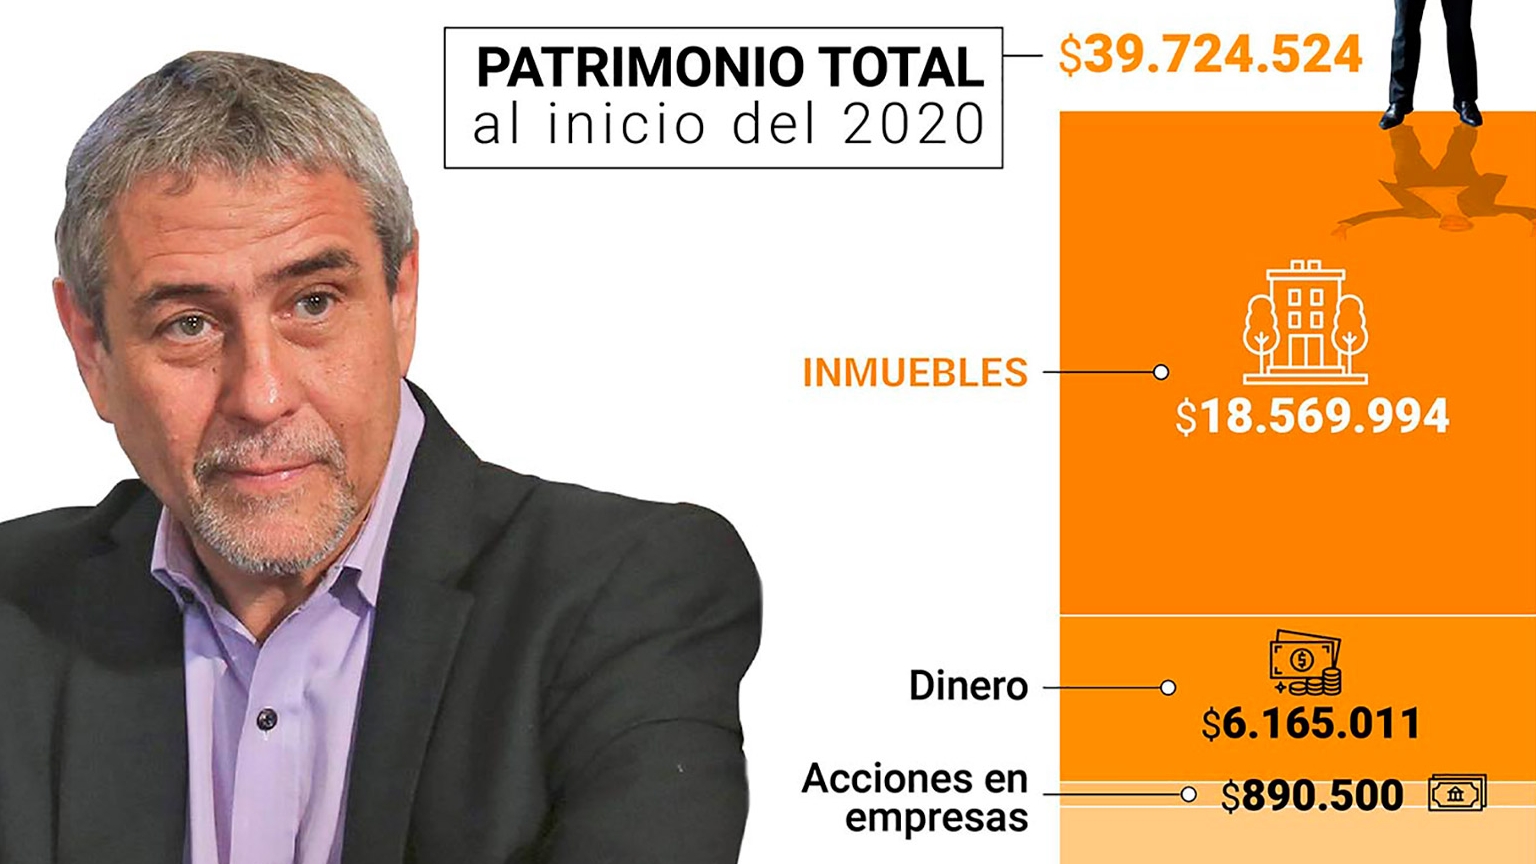 El patrimonio declarado por Ferraresi ante la Oficina Anticorrupción, luego de asumir como ministro (Infografía: Marcelo Regalado).